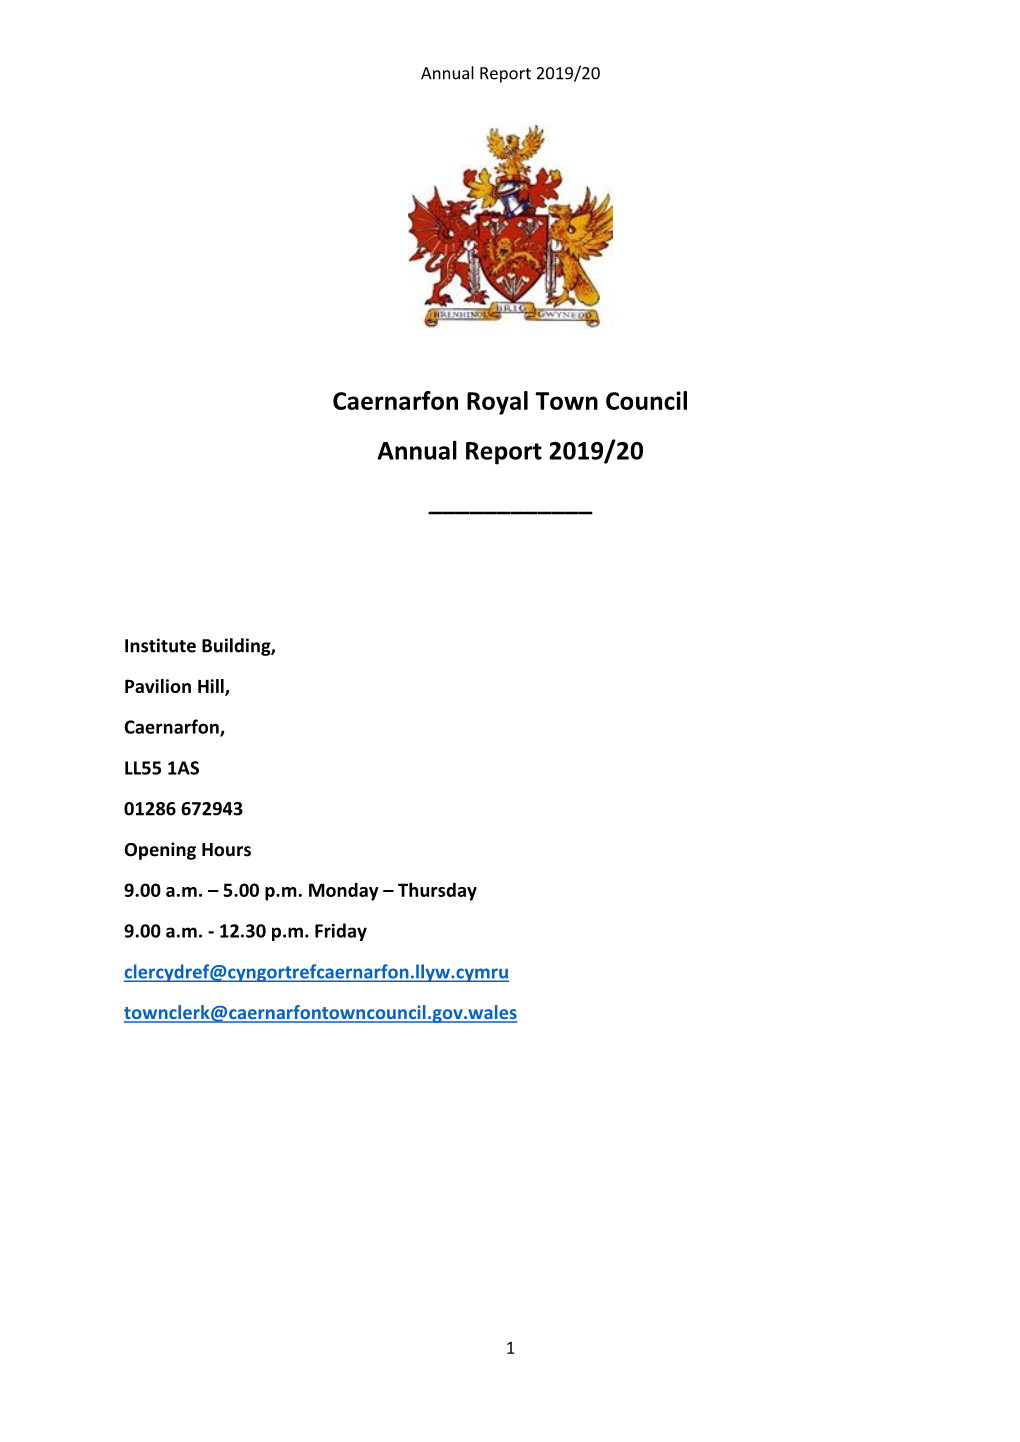 Caernarfon Royal Town Council Annual Report 2019/20 ______